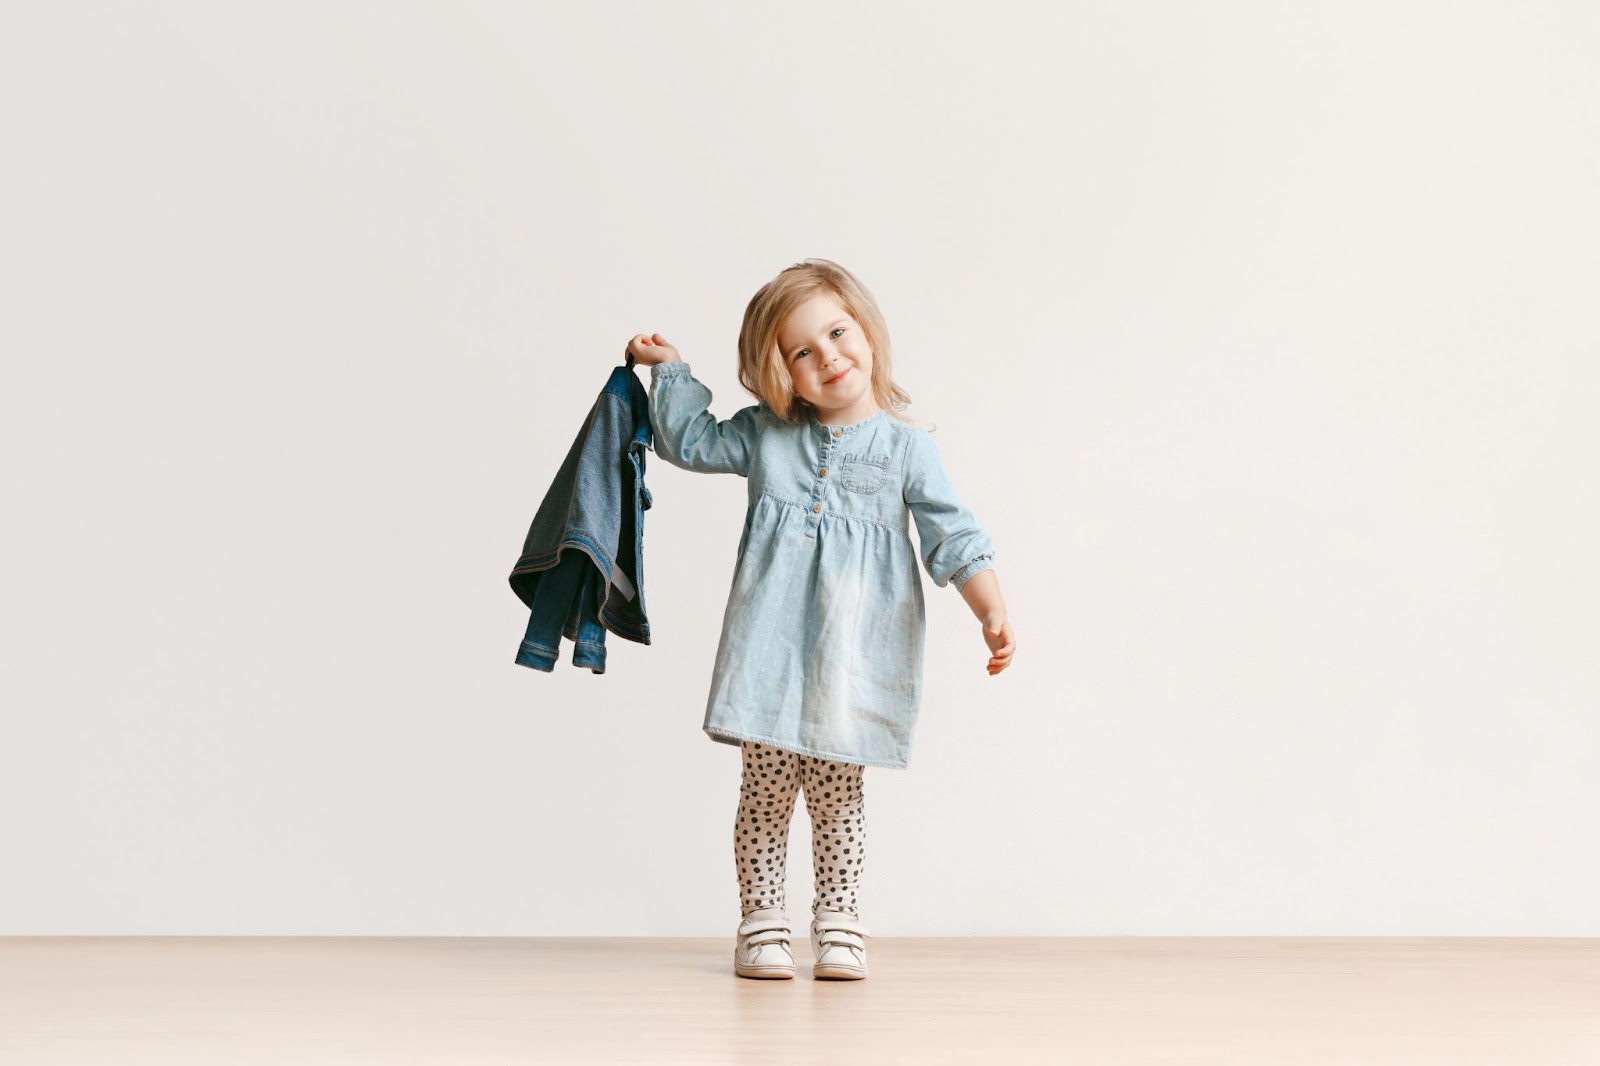 Doar ou vender:O que fazer com as roupas do meu filho?